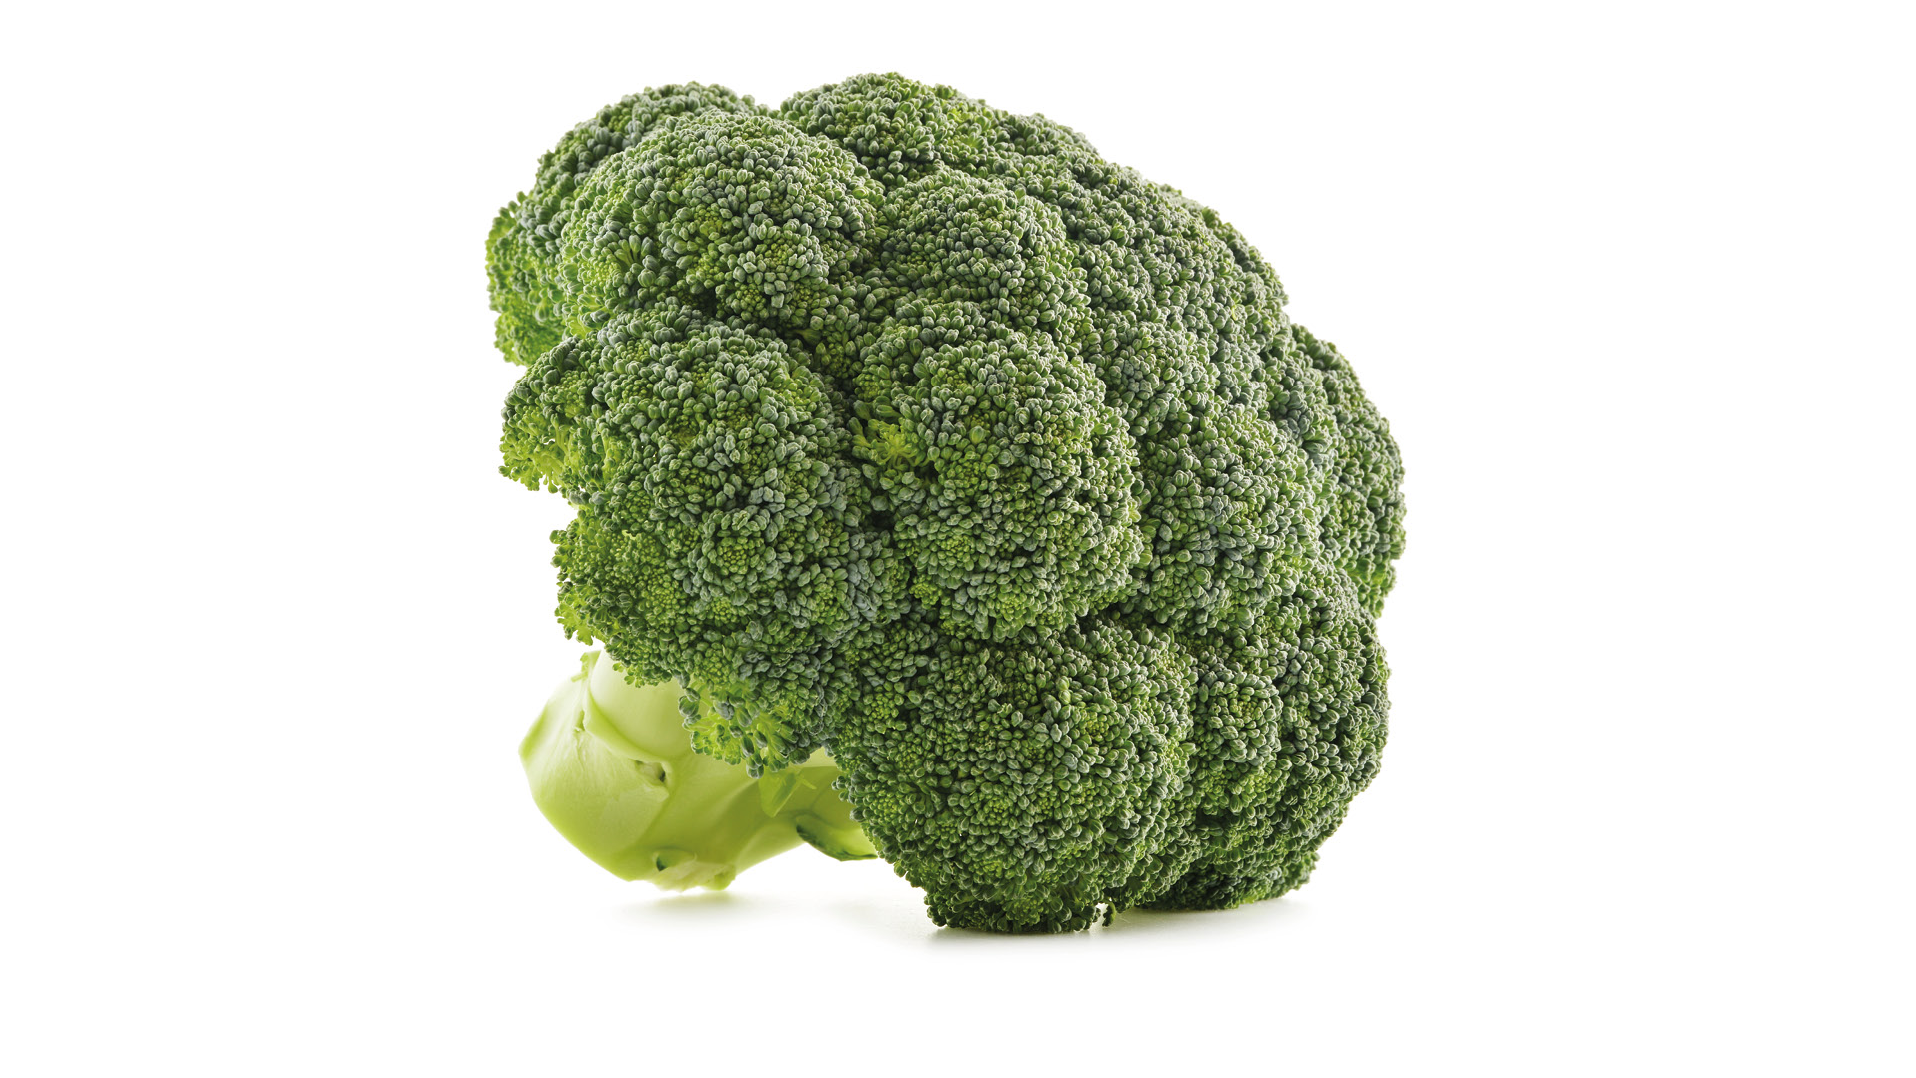 Broccoli i närbild.